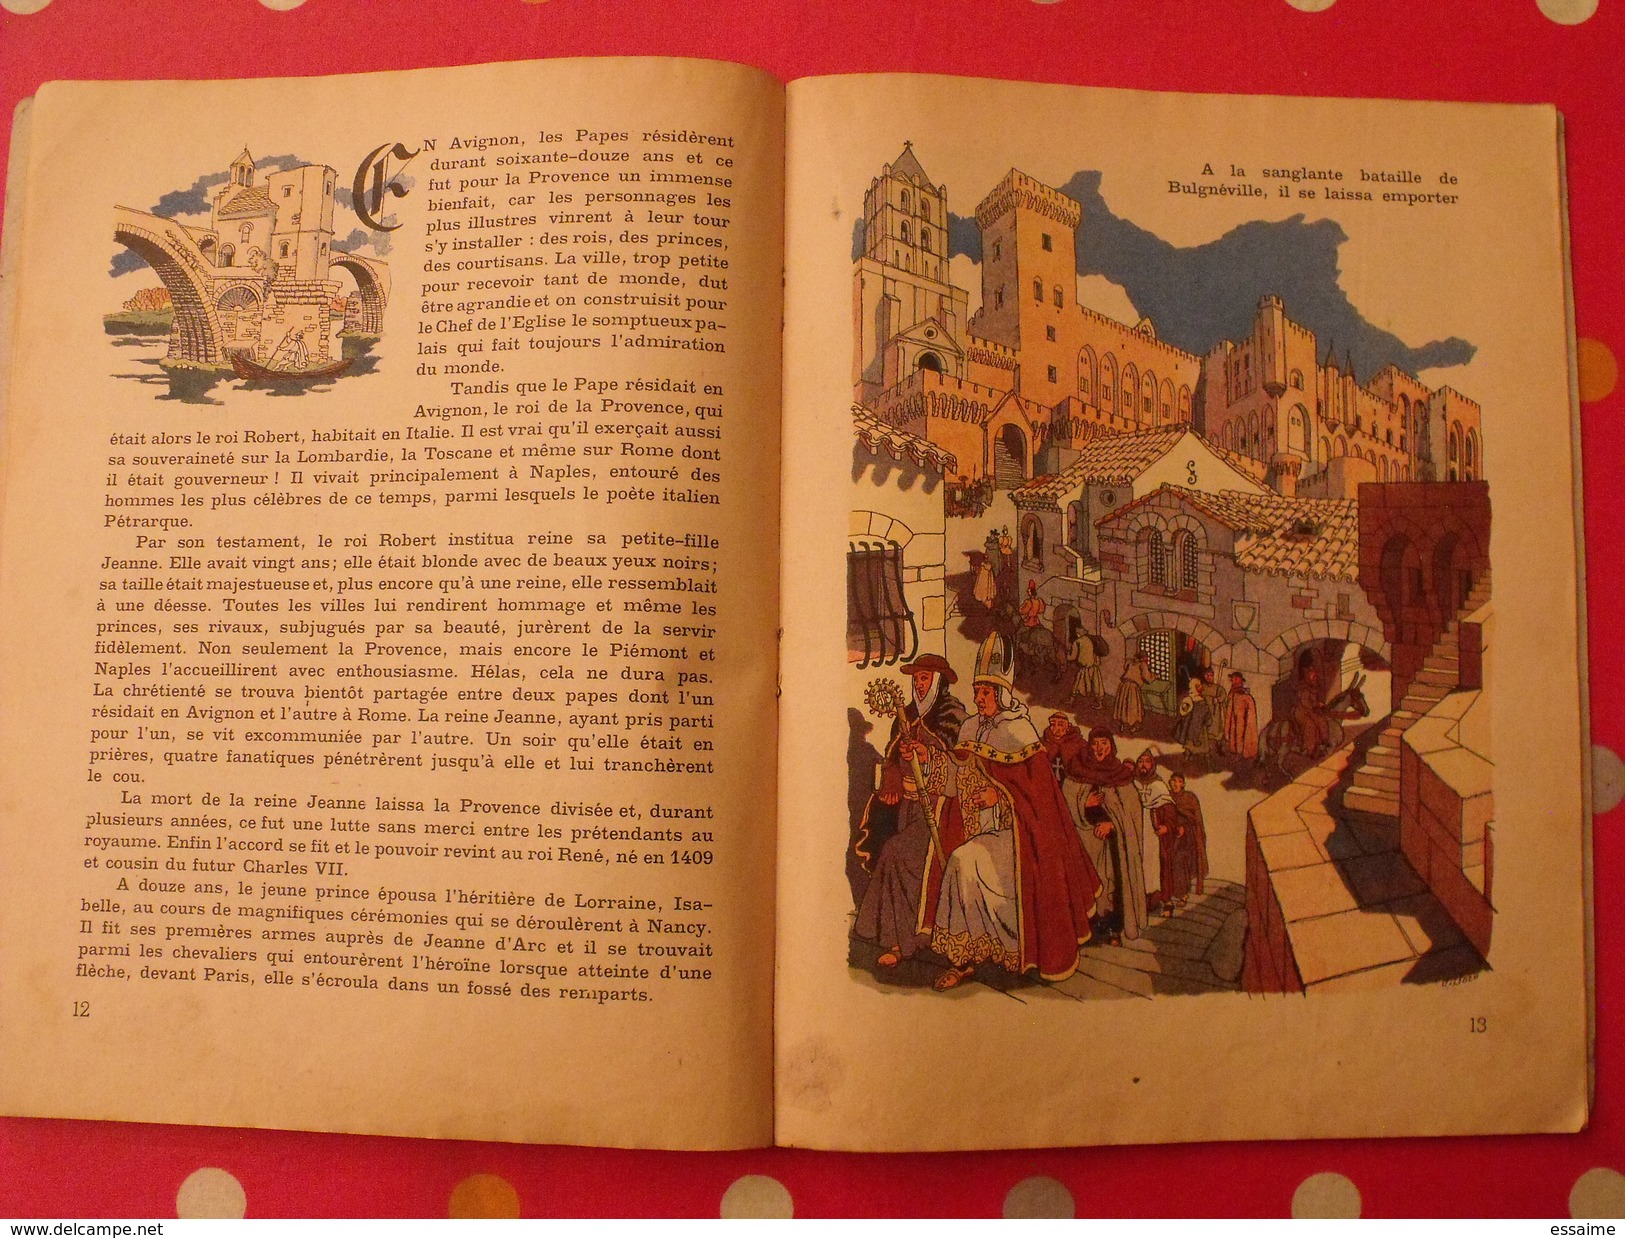 Histoire de la Provence. Paluel Marmont. illustré par Jacques Liozu. Gründ 1943